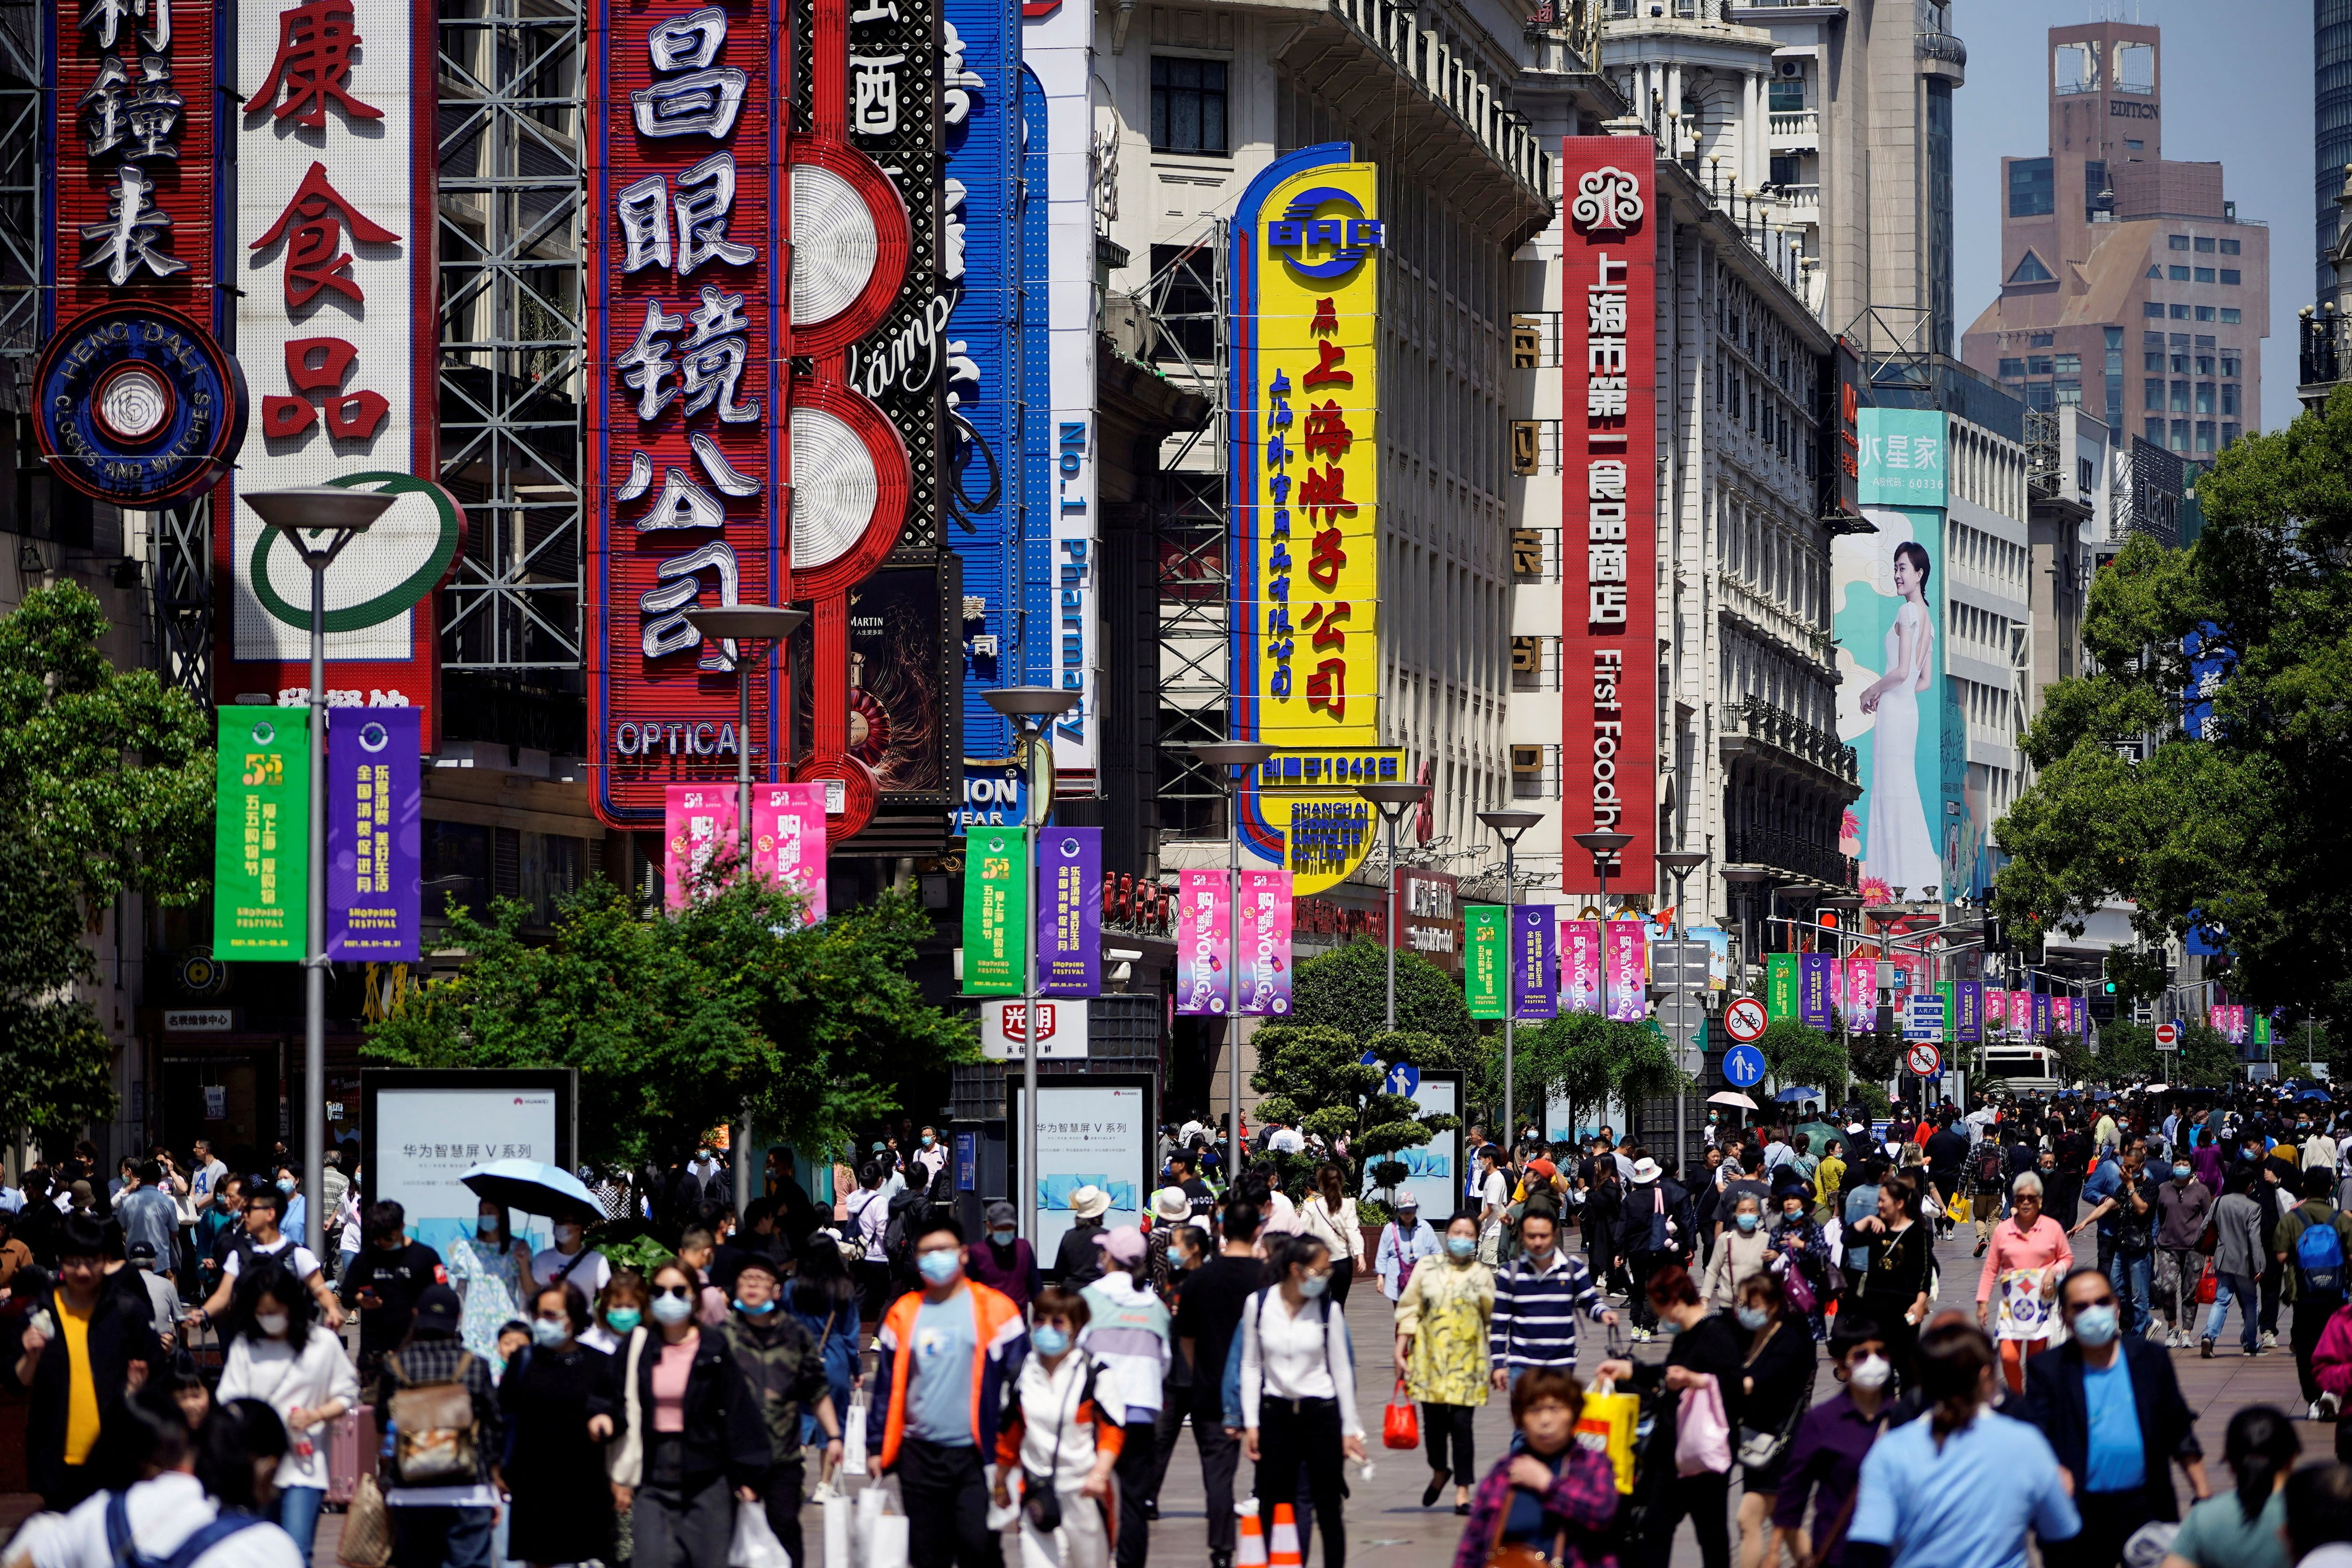 El gran tamaño y la diversidad de las zonas en China, asó como las estructuras sociales serán algunas de las dificultades que deberán afrontar en el camino hacia la modernización (REUTERS)